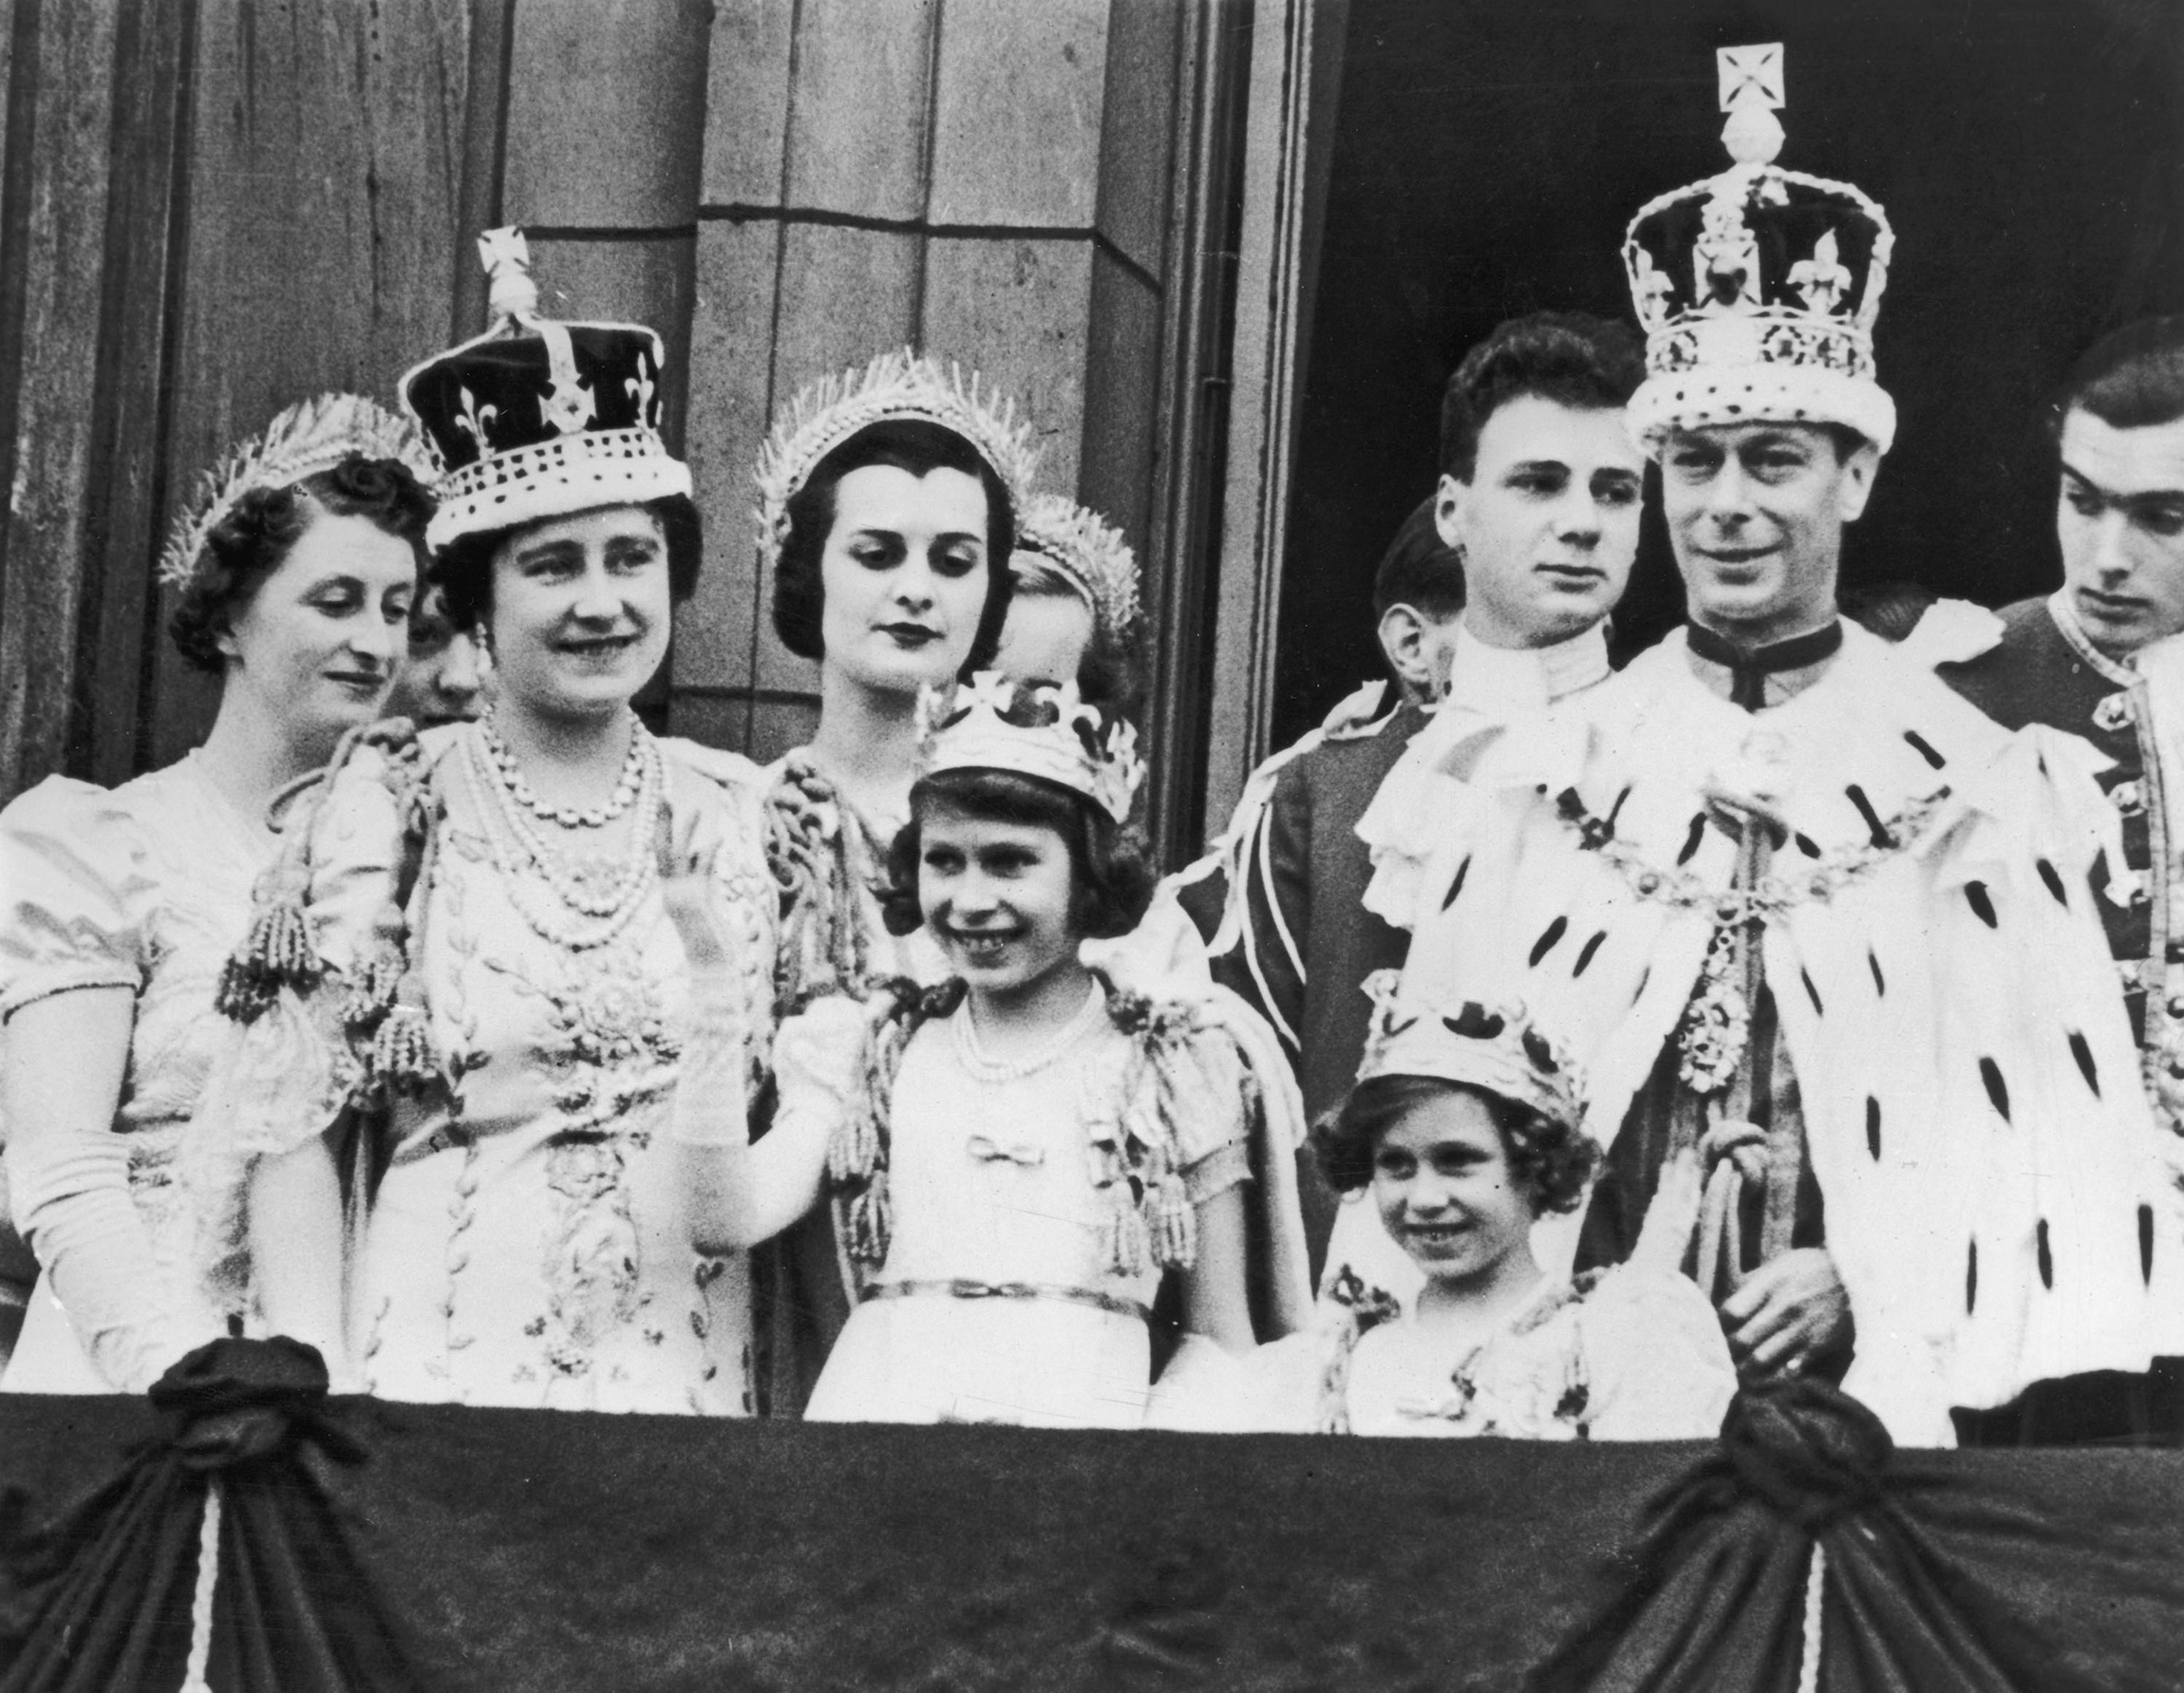 День коронации Георга VI, отца Елизаветы II. 12 сентября 1937 года.

На первом плане слева направо: Елизавета Боуз-Лайон (королева-мать), принцессы Елизавета и Маргарет, король Георг VI